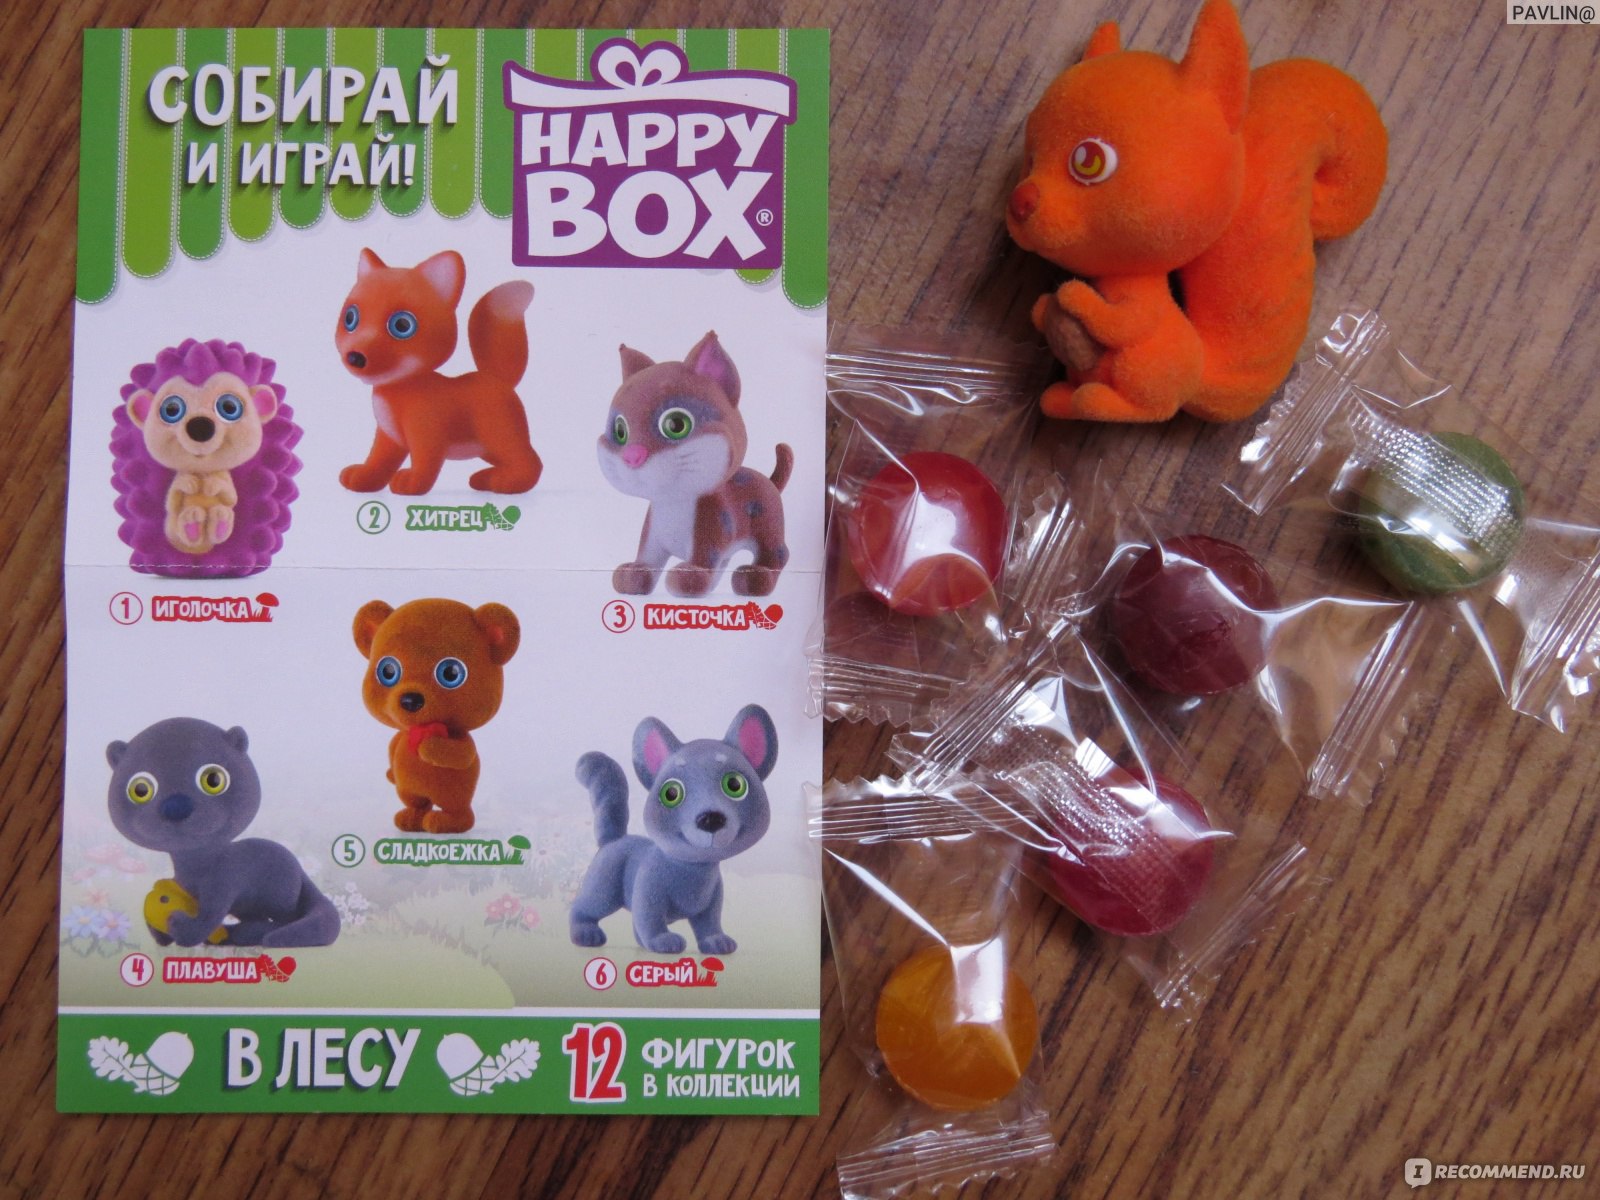 Be happy box. Хэппи бокс. Happy Box игрушки. Хэппи бокс в лесу. Коллекции Happy Box игрушка.